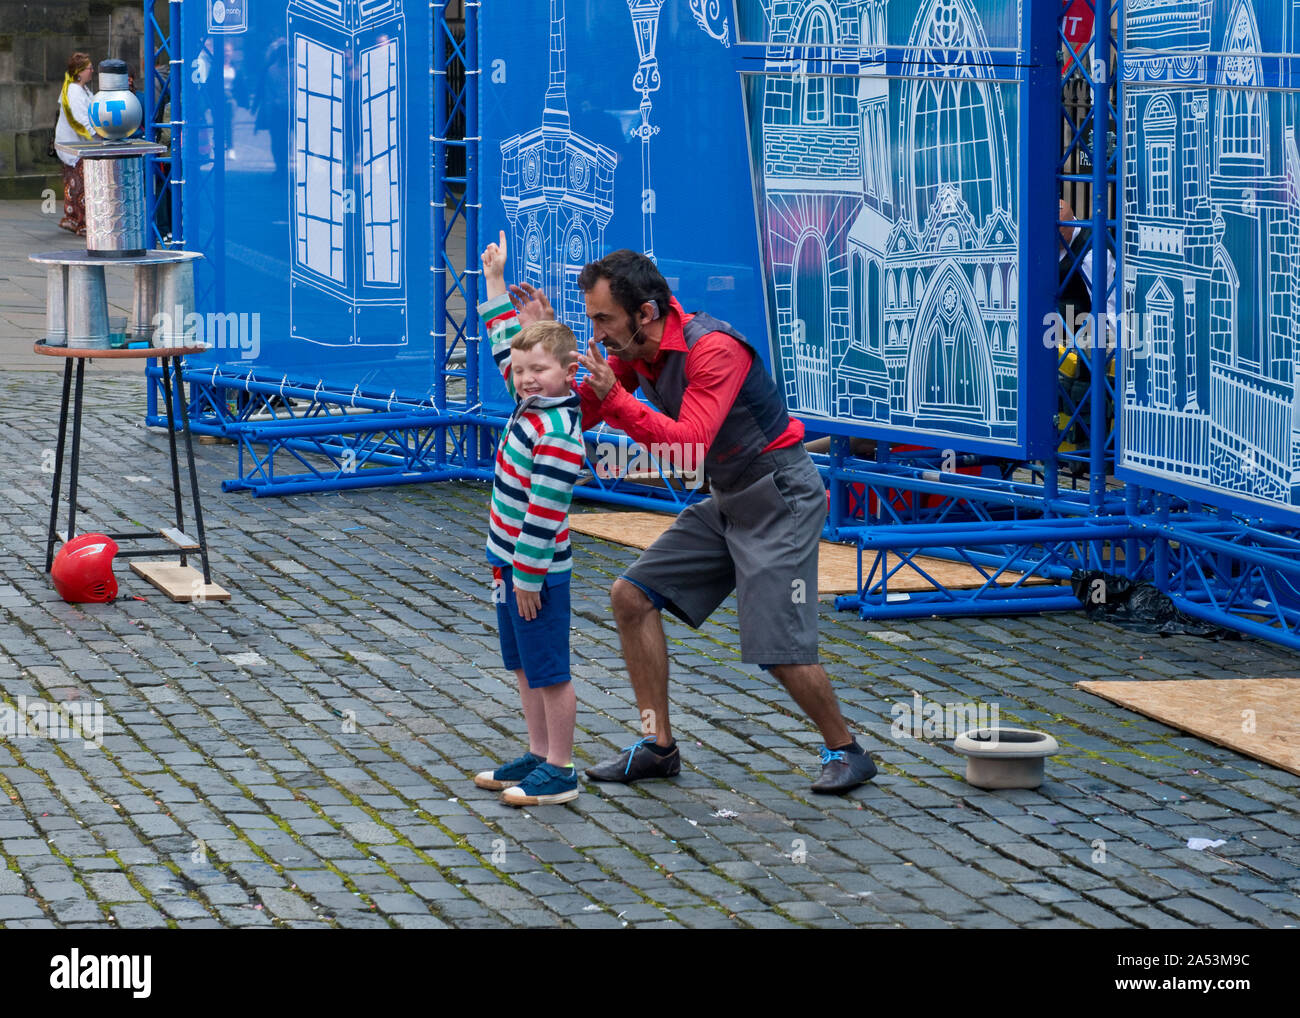 Jeune garçon dans le public prenant part à la rue. Edinburgh Fringe Festival. Royal Mile, Ecosse Banque D'Images